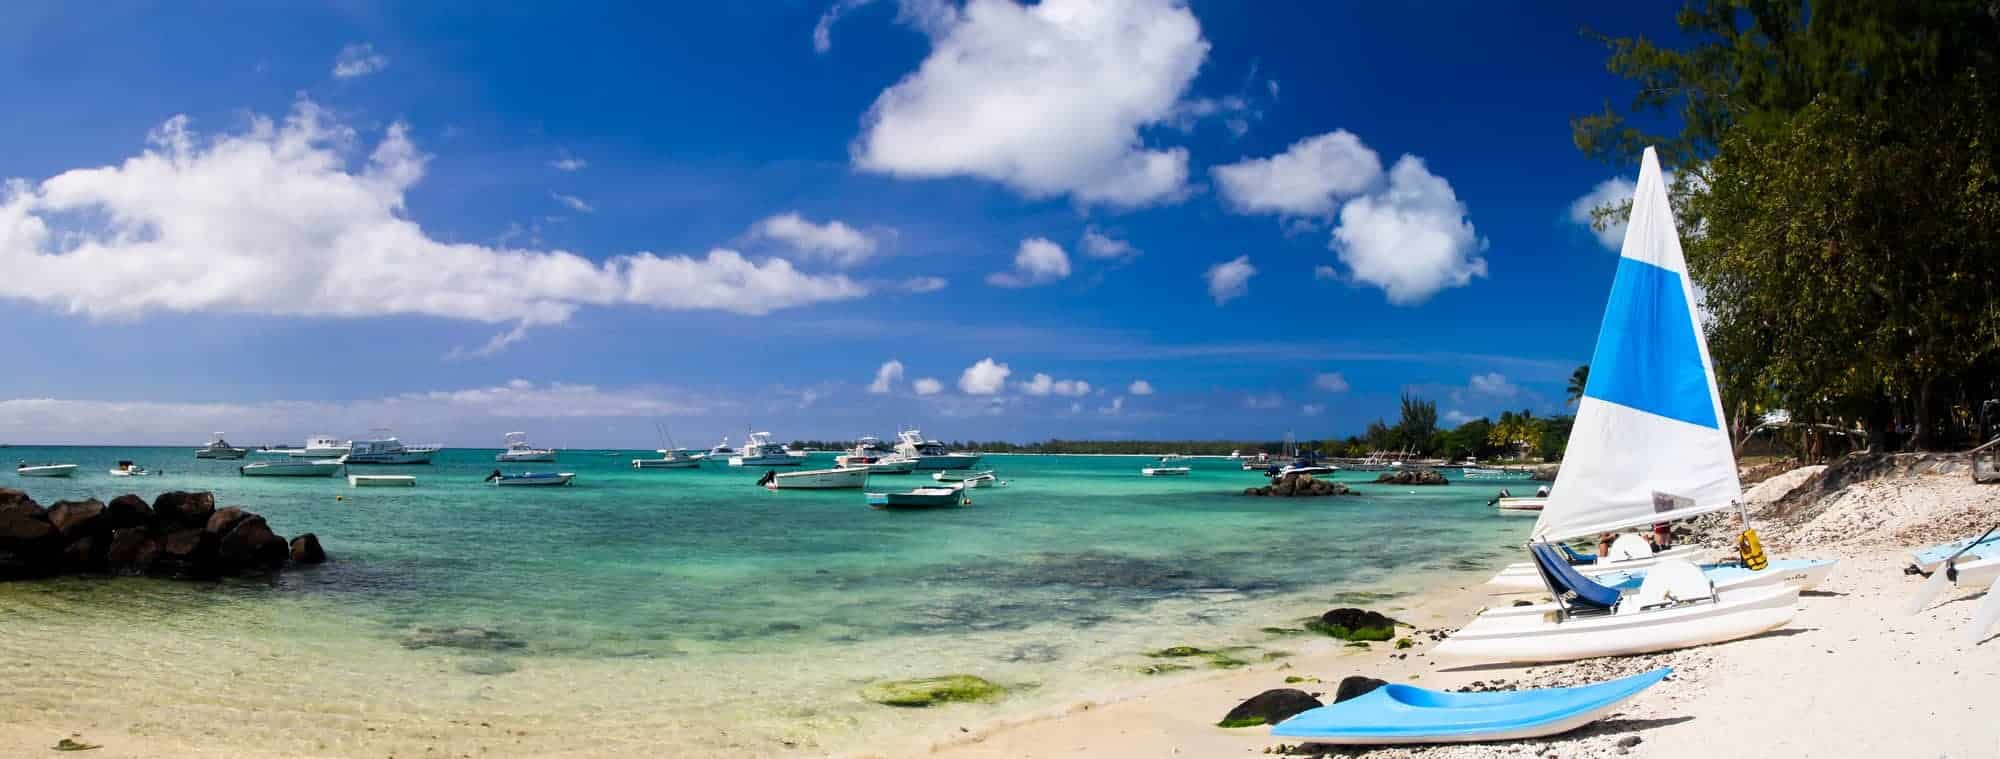 Hvad koster en rejse til Mauritius